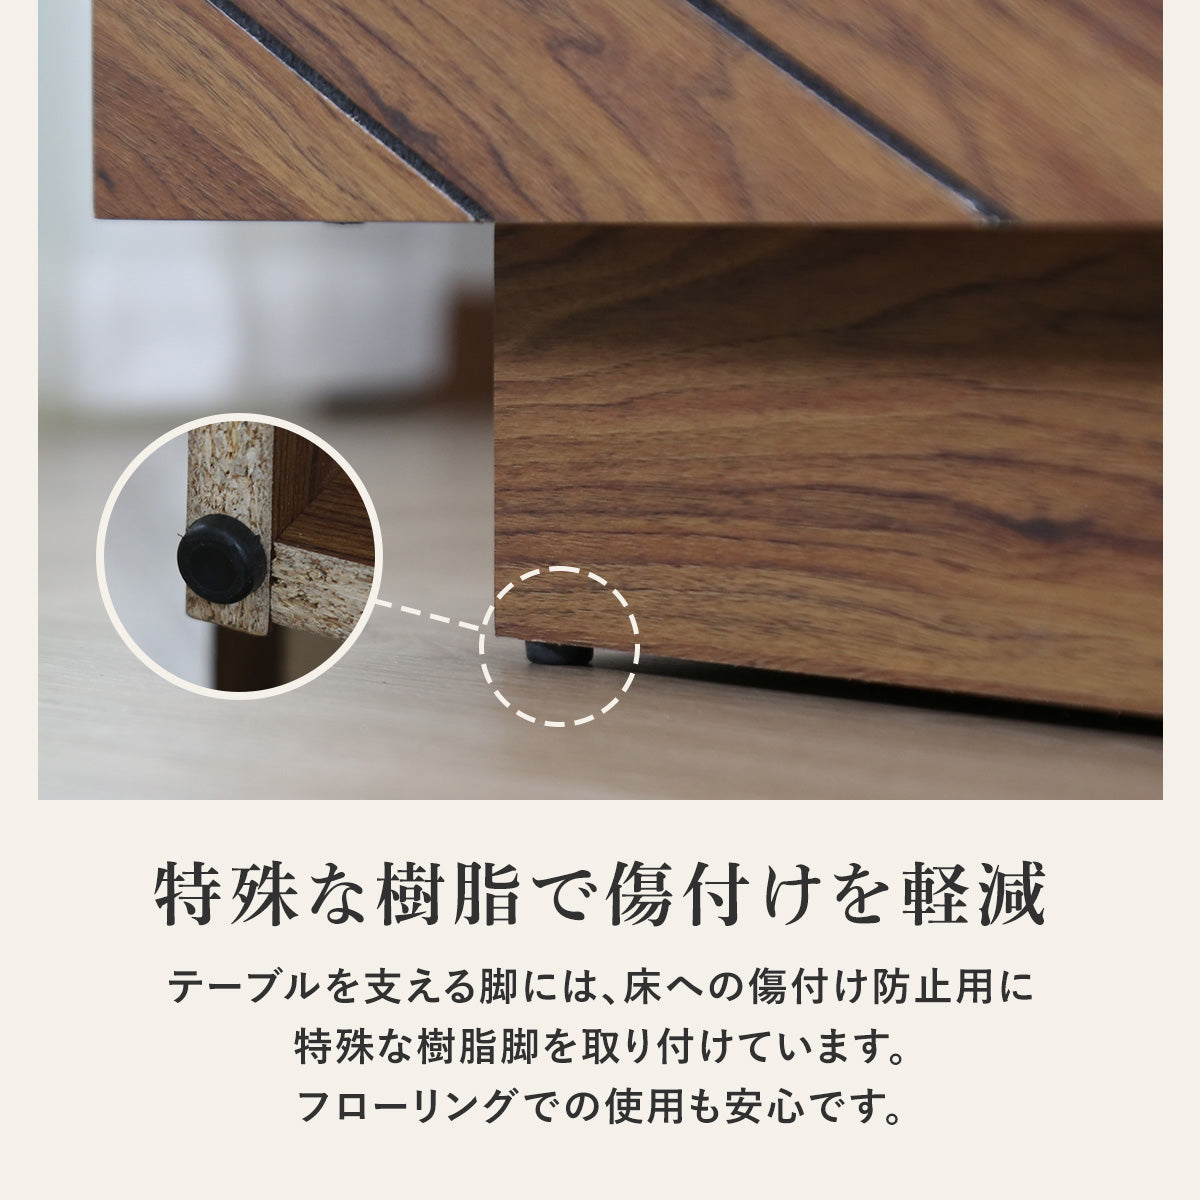 無印良品 木製 ローテーブル オーク材 家具 送料込み - センター 